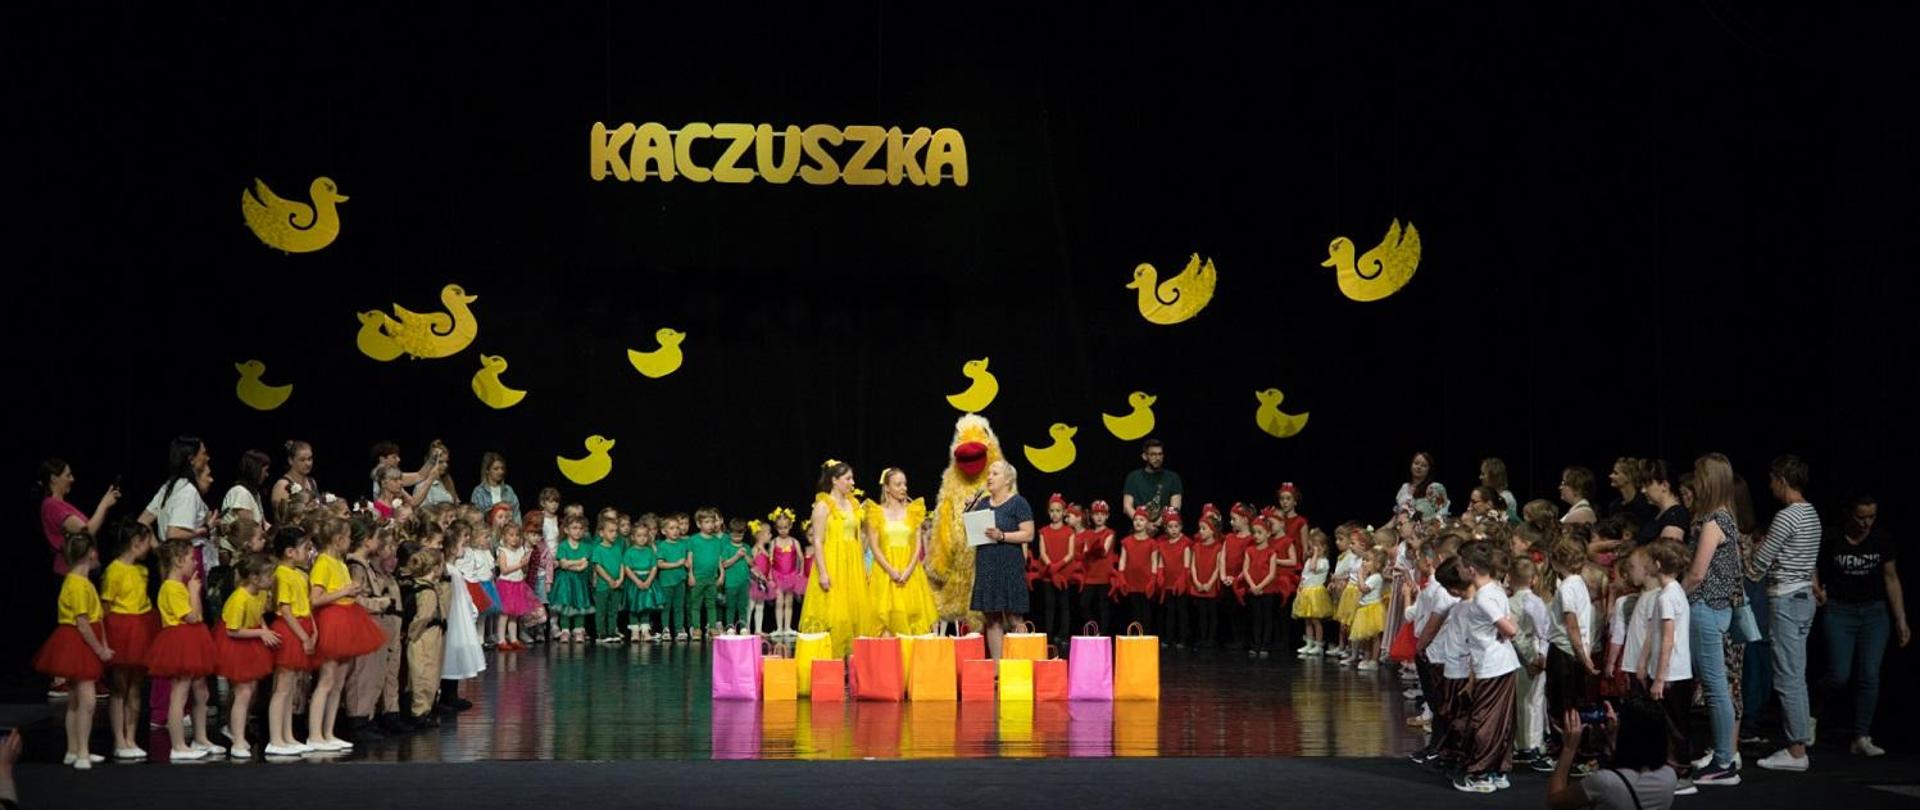 Zdjęcie przedstawia stojących na scenie uczestników Festiwalu Tańczących Dzieci „Kaczuszka”. Na górze sceny jest żółty napis Kaczuszka, obok są żółte kaczki. 